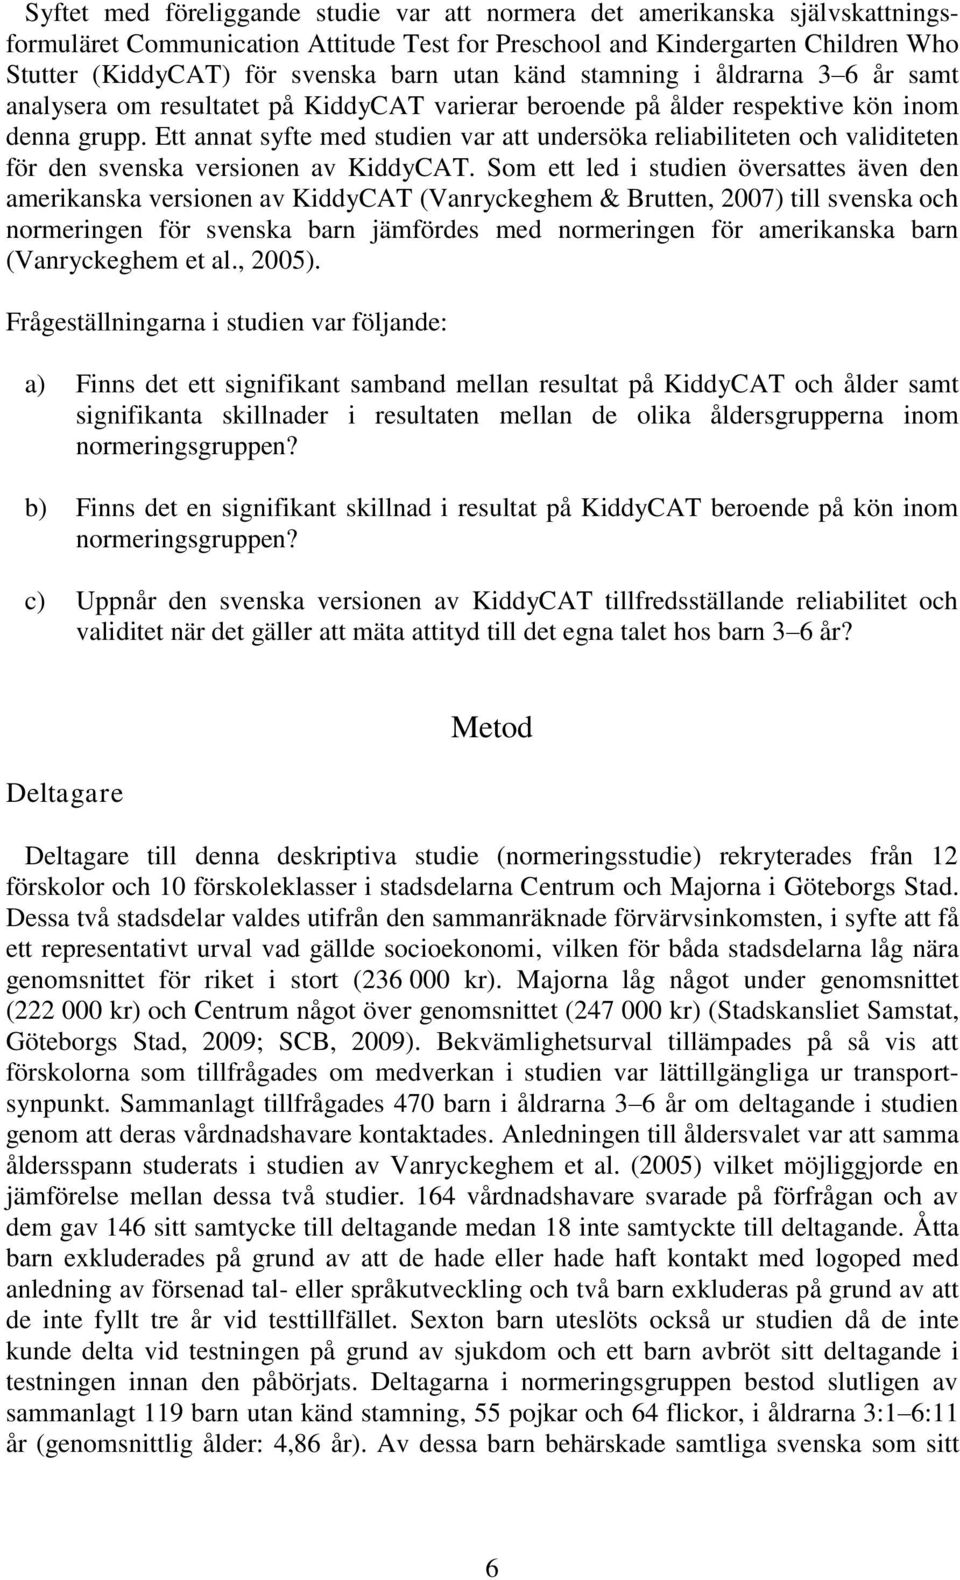 Ett annat syfte med studien var att undersöka reliabiliteten och validiteten för den svenska versionen av KiddyCAT.